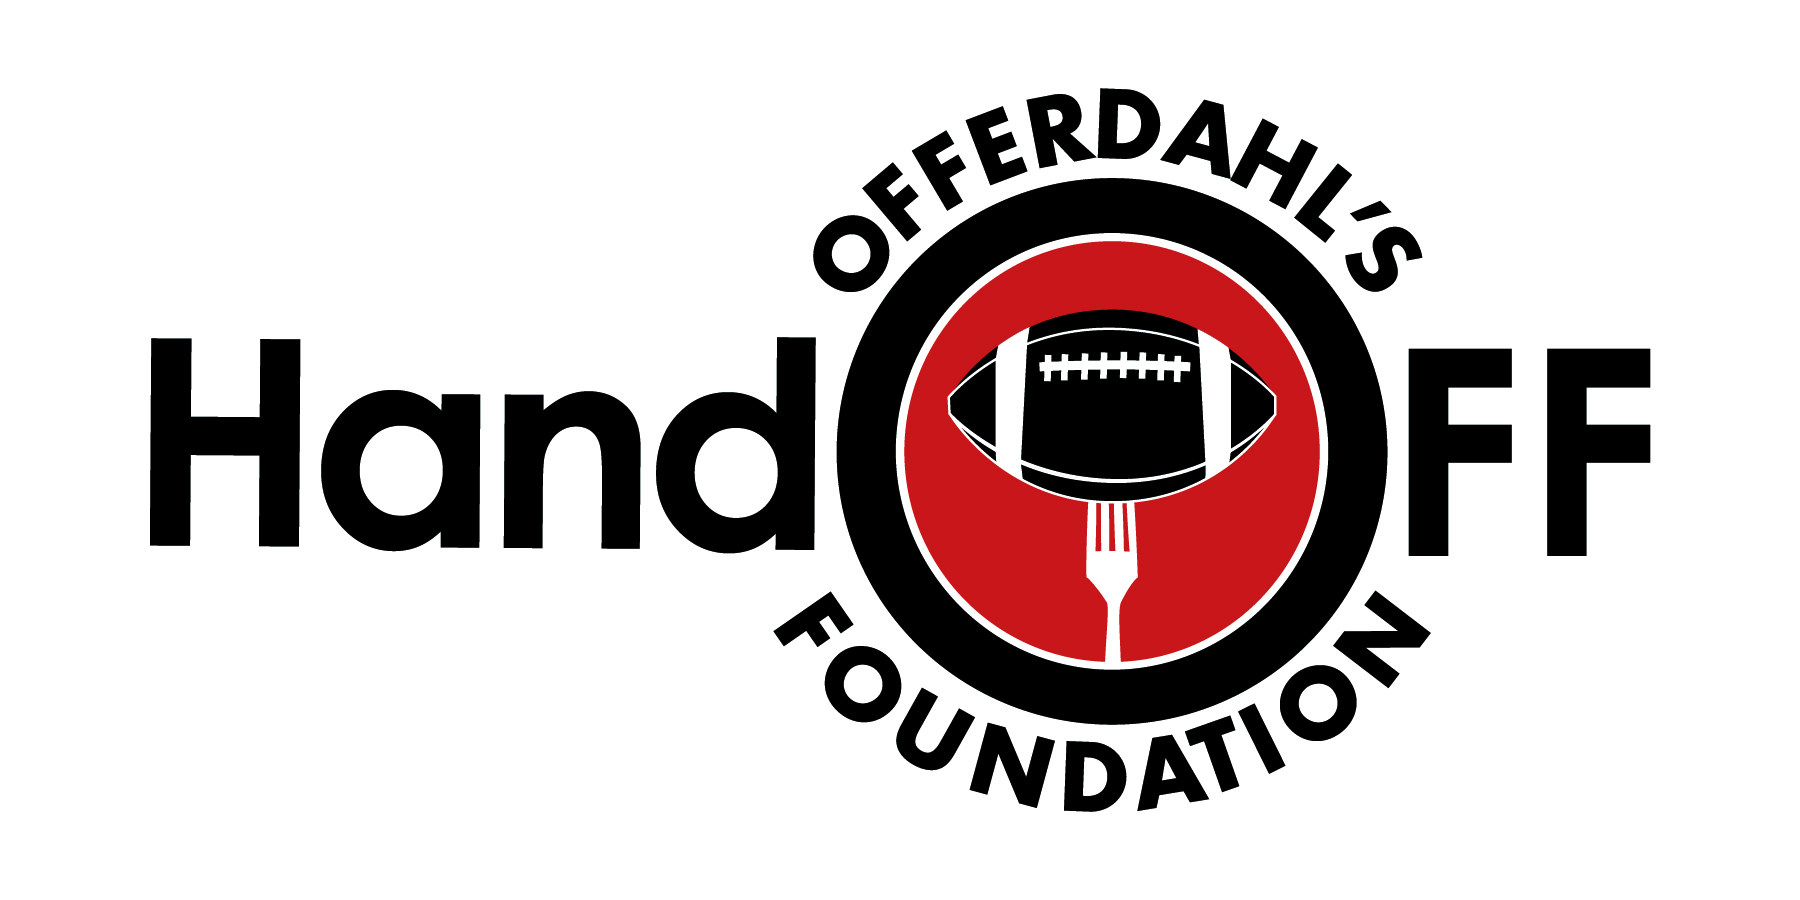 Offerdahls Logo